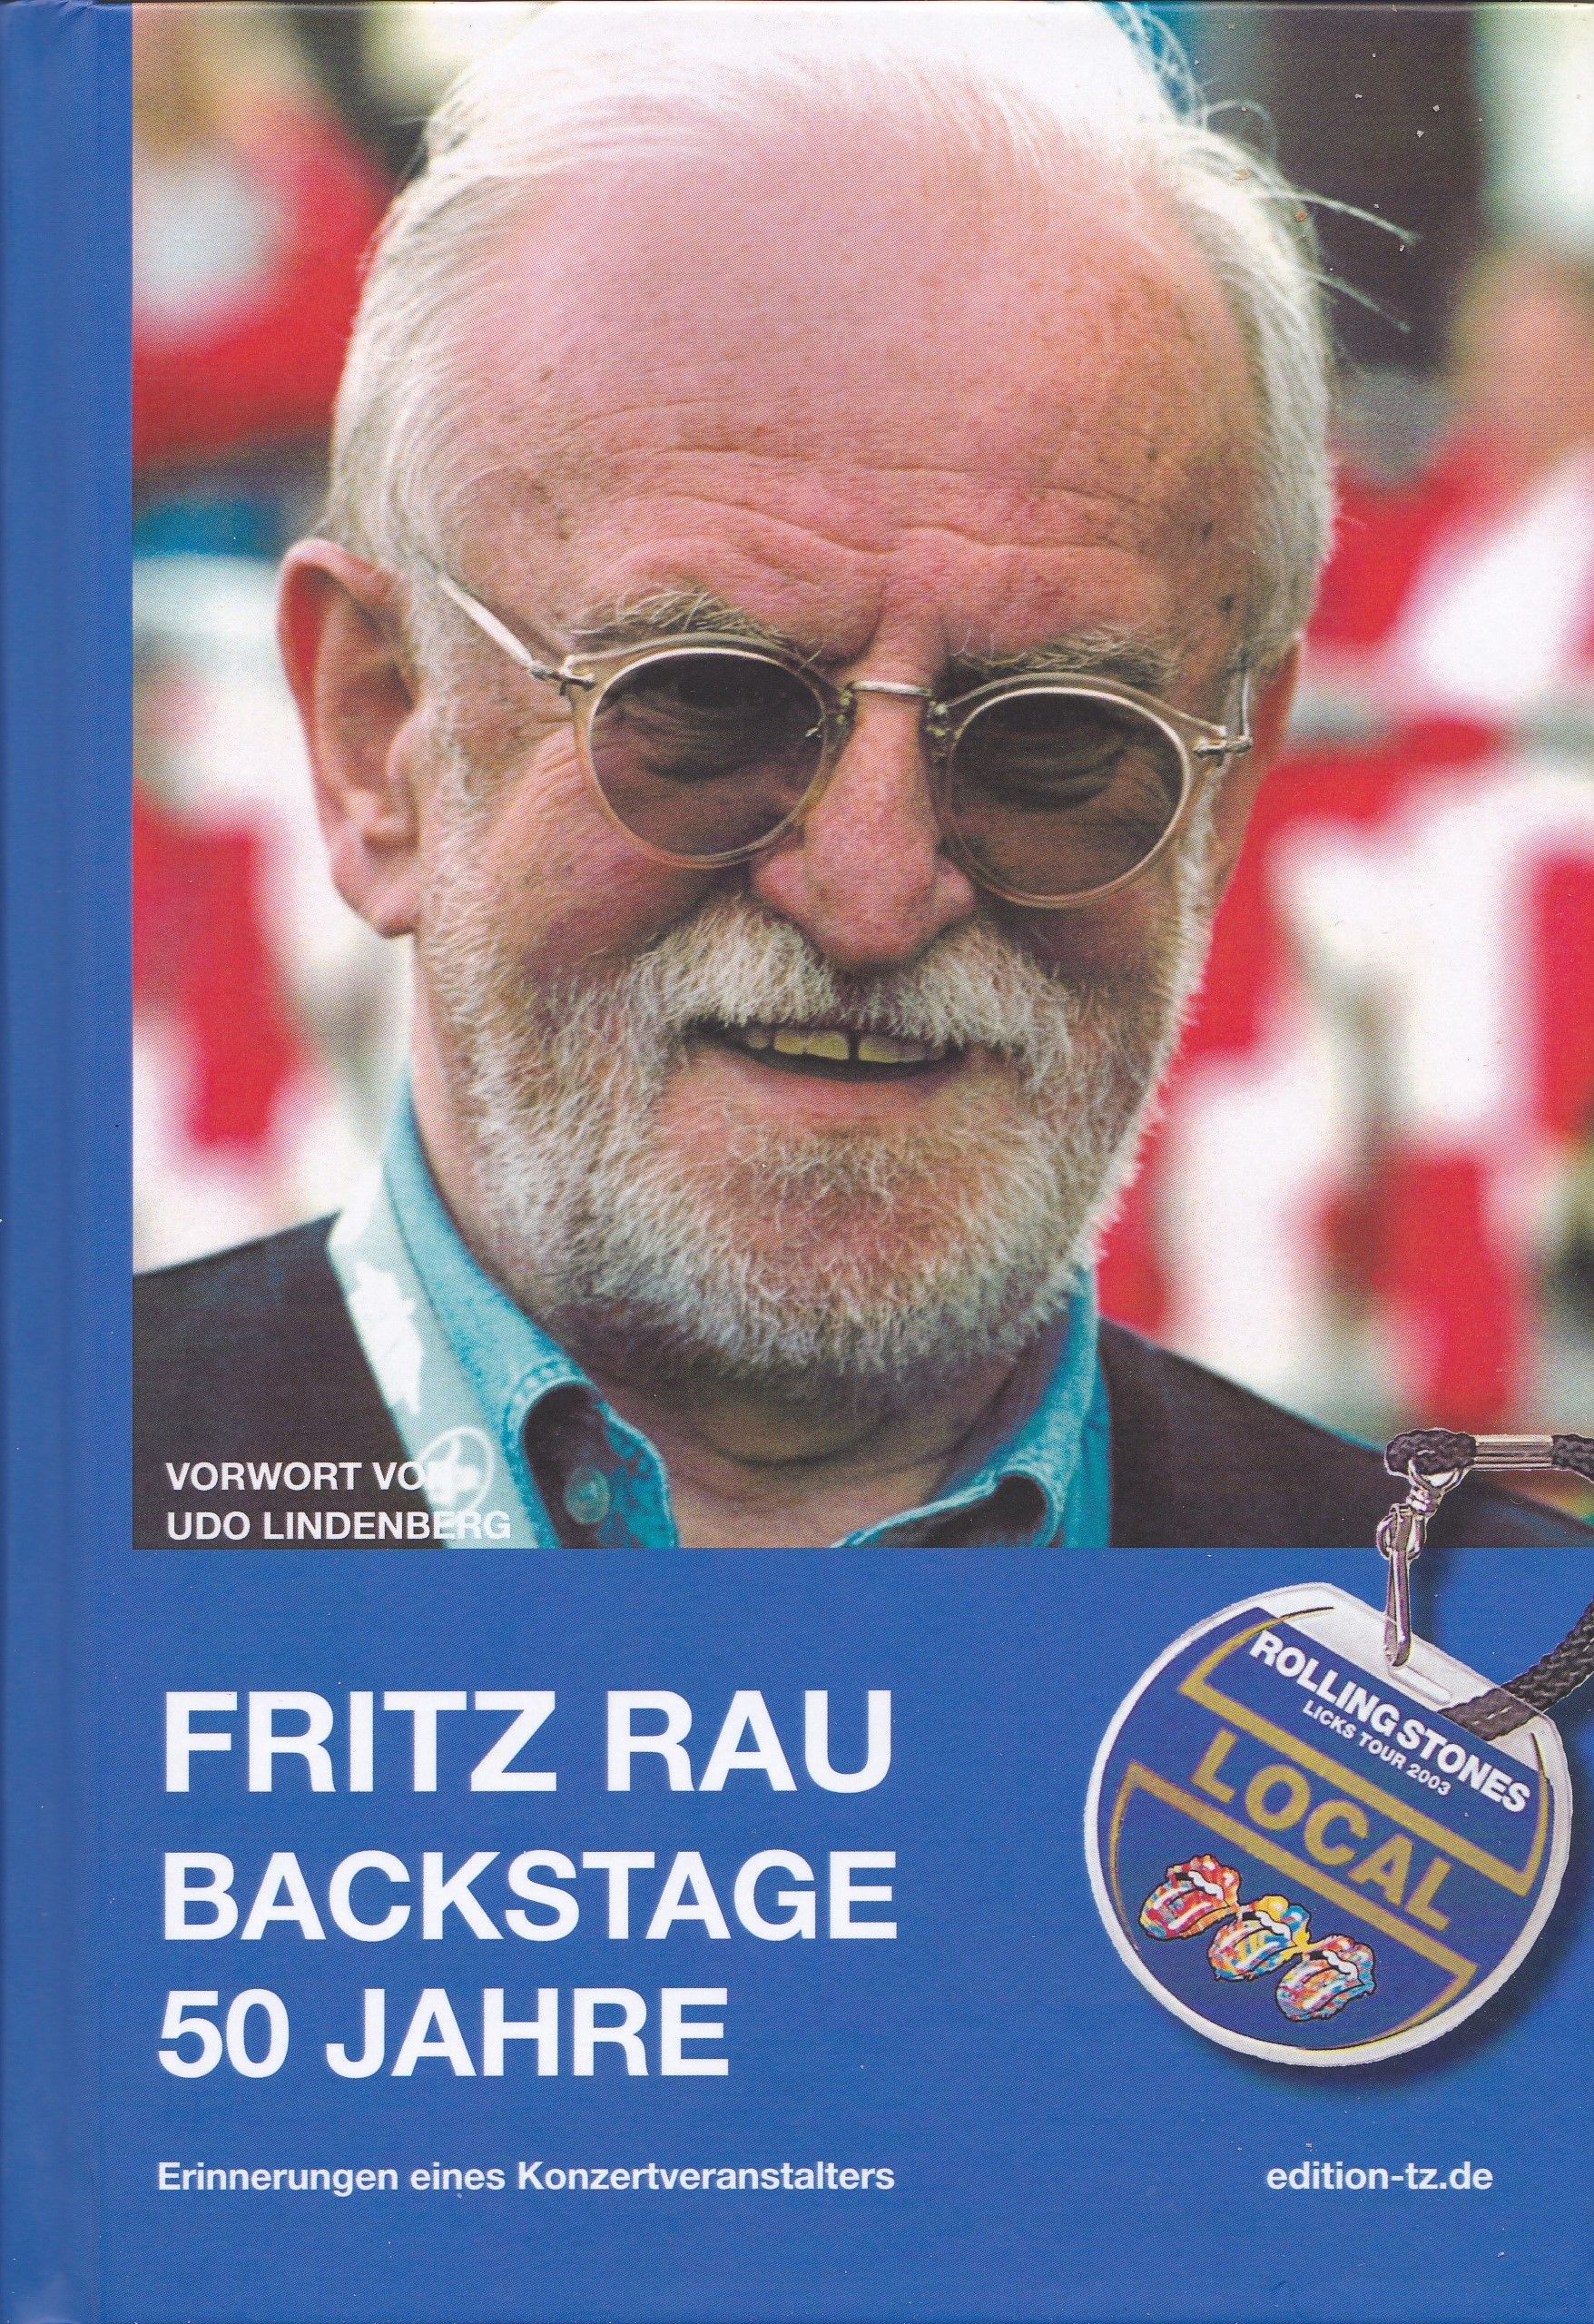 50 JareBackstage by Fritz Rau book in German